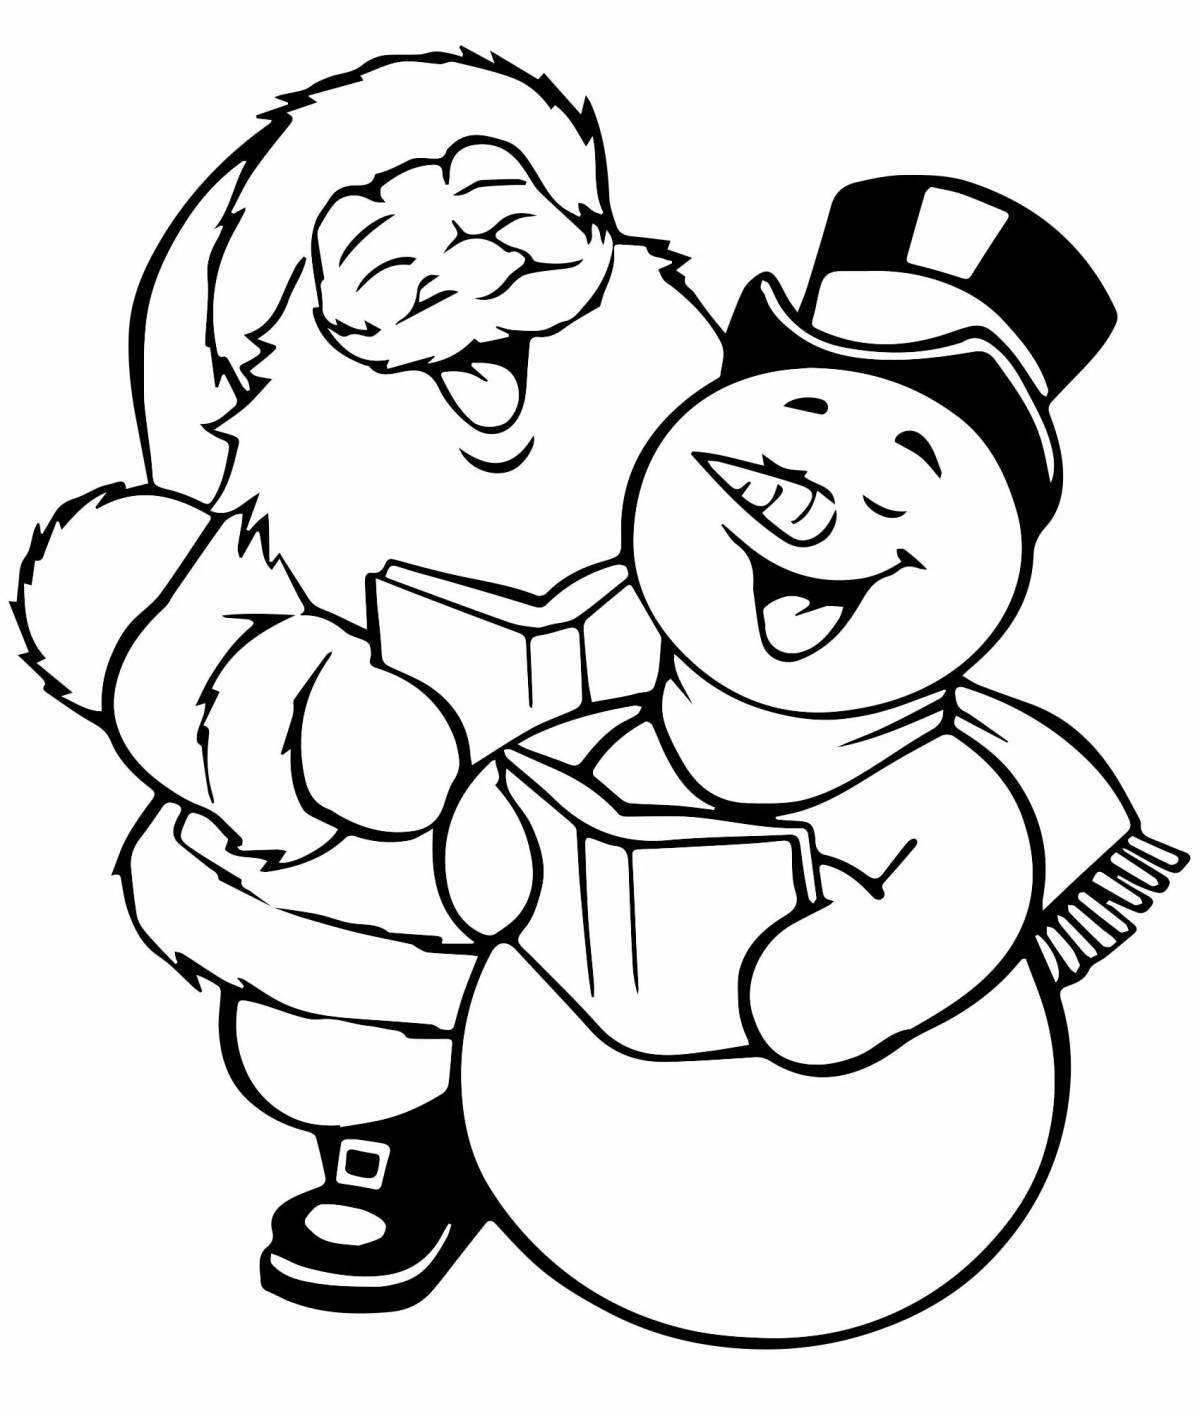 Santa Claus and snowman #8